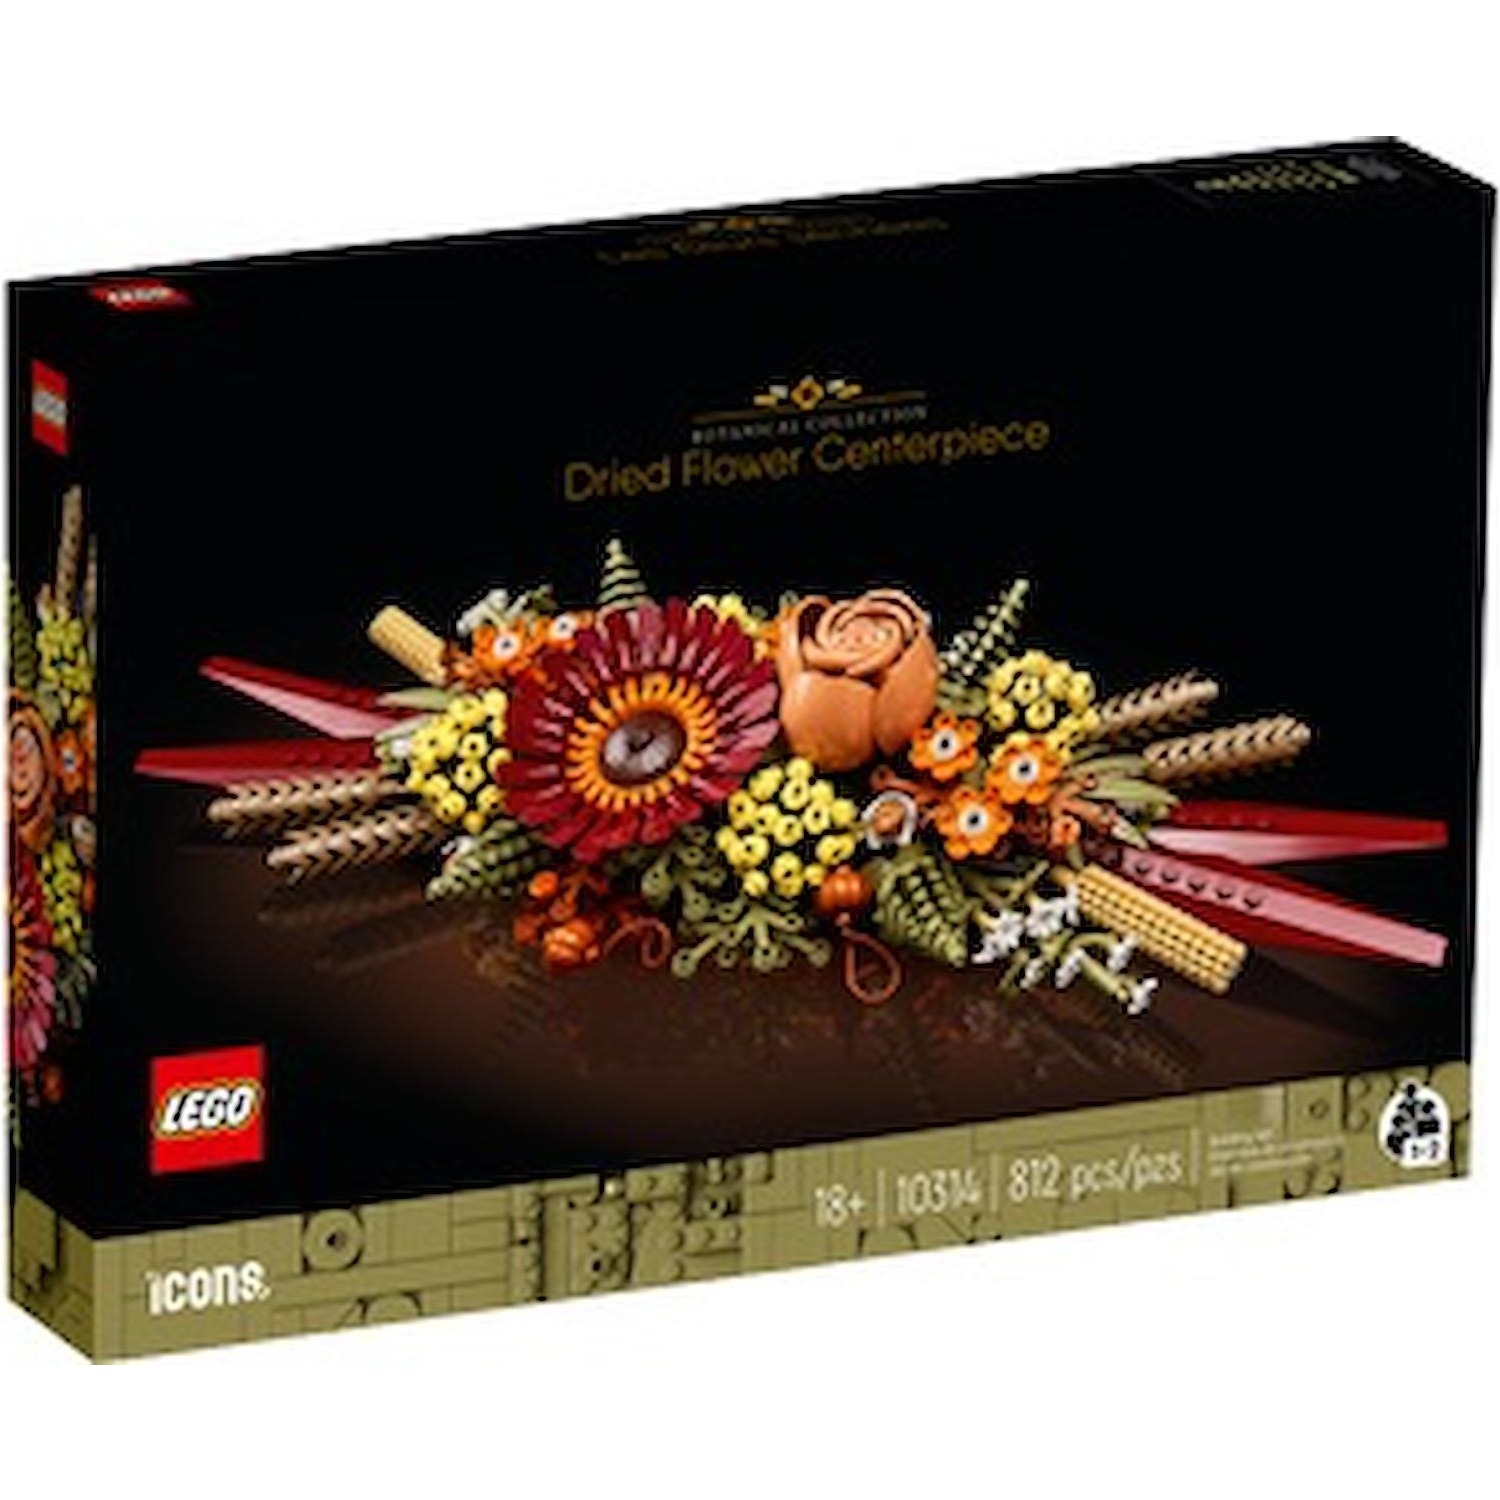 Immagine per Lego Icons Centrotavola di fiori secchi da DIMOStore